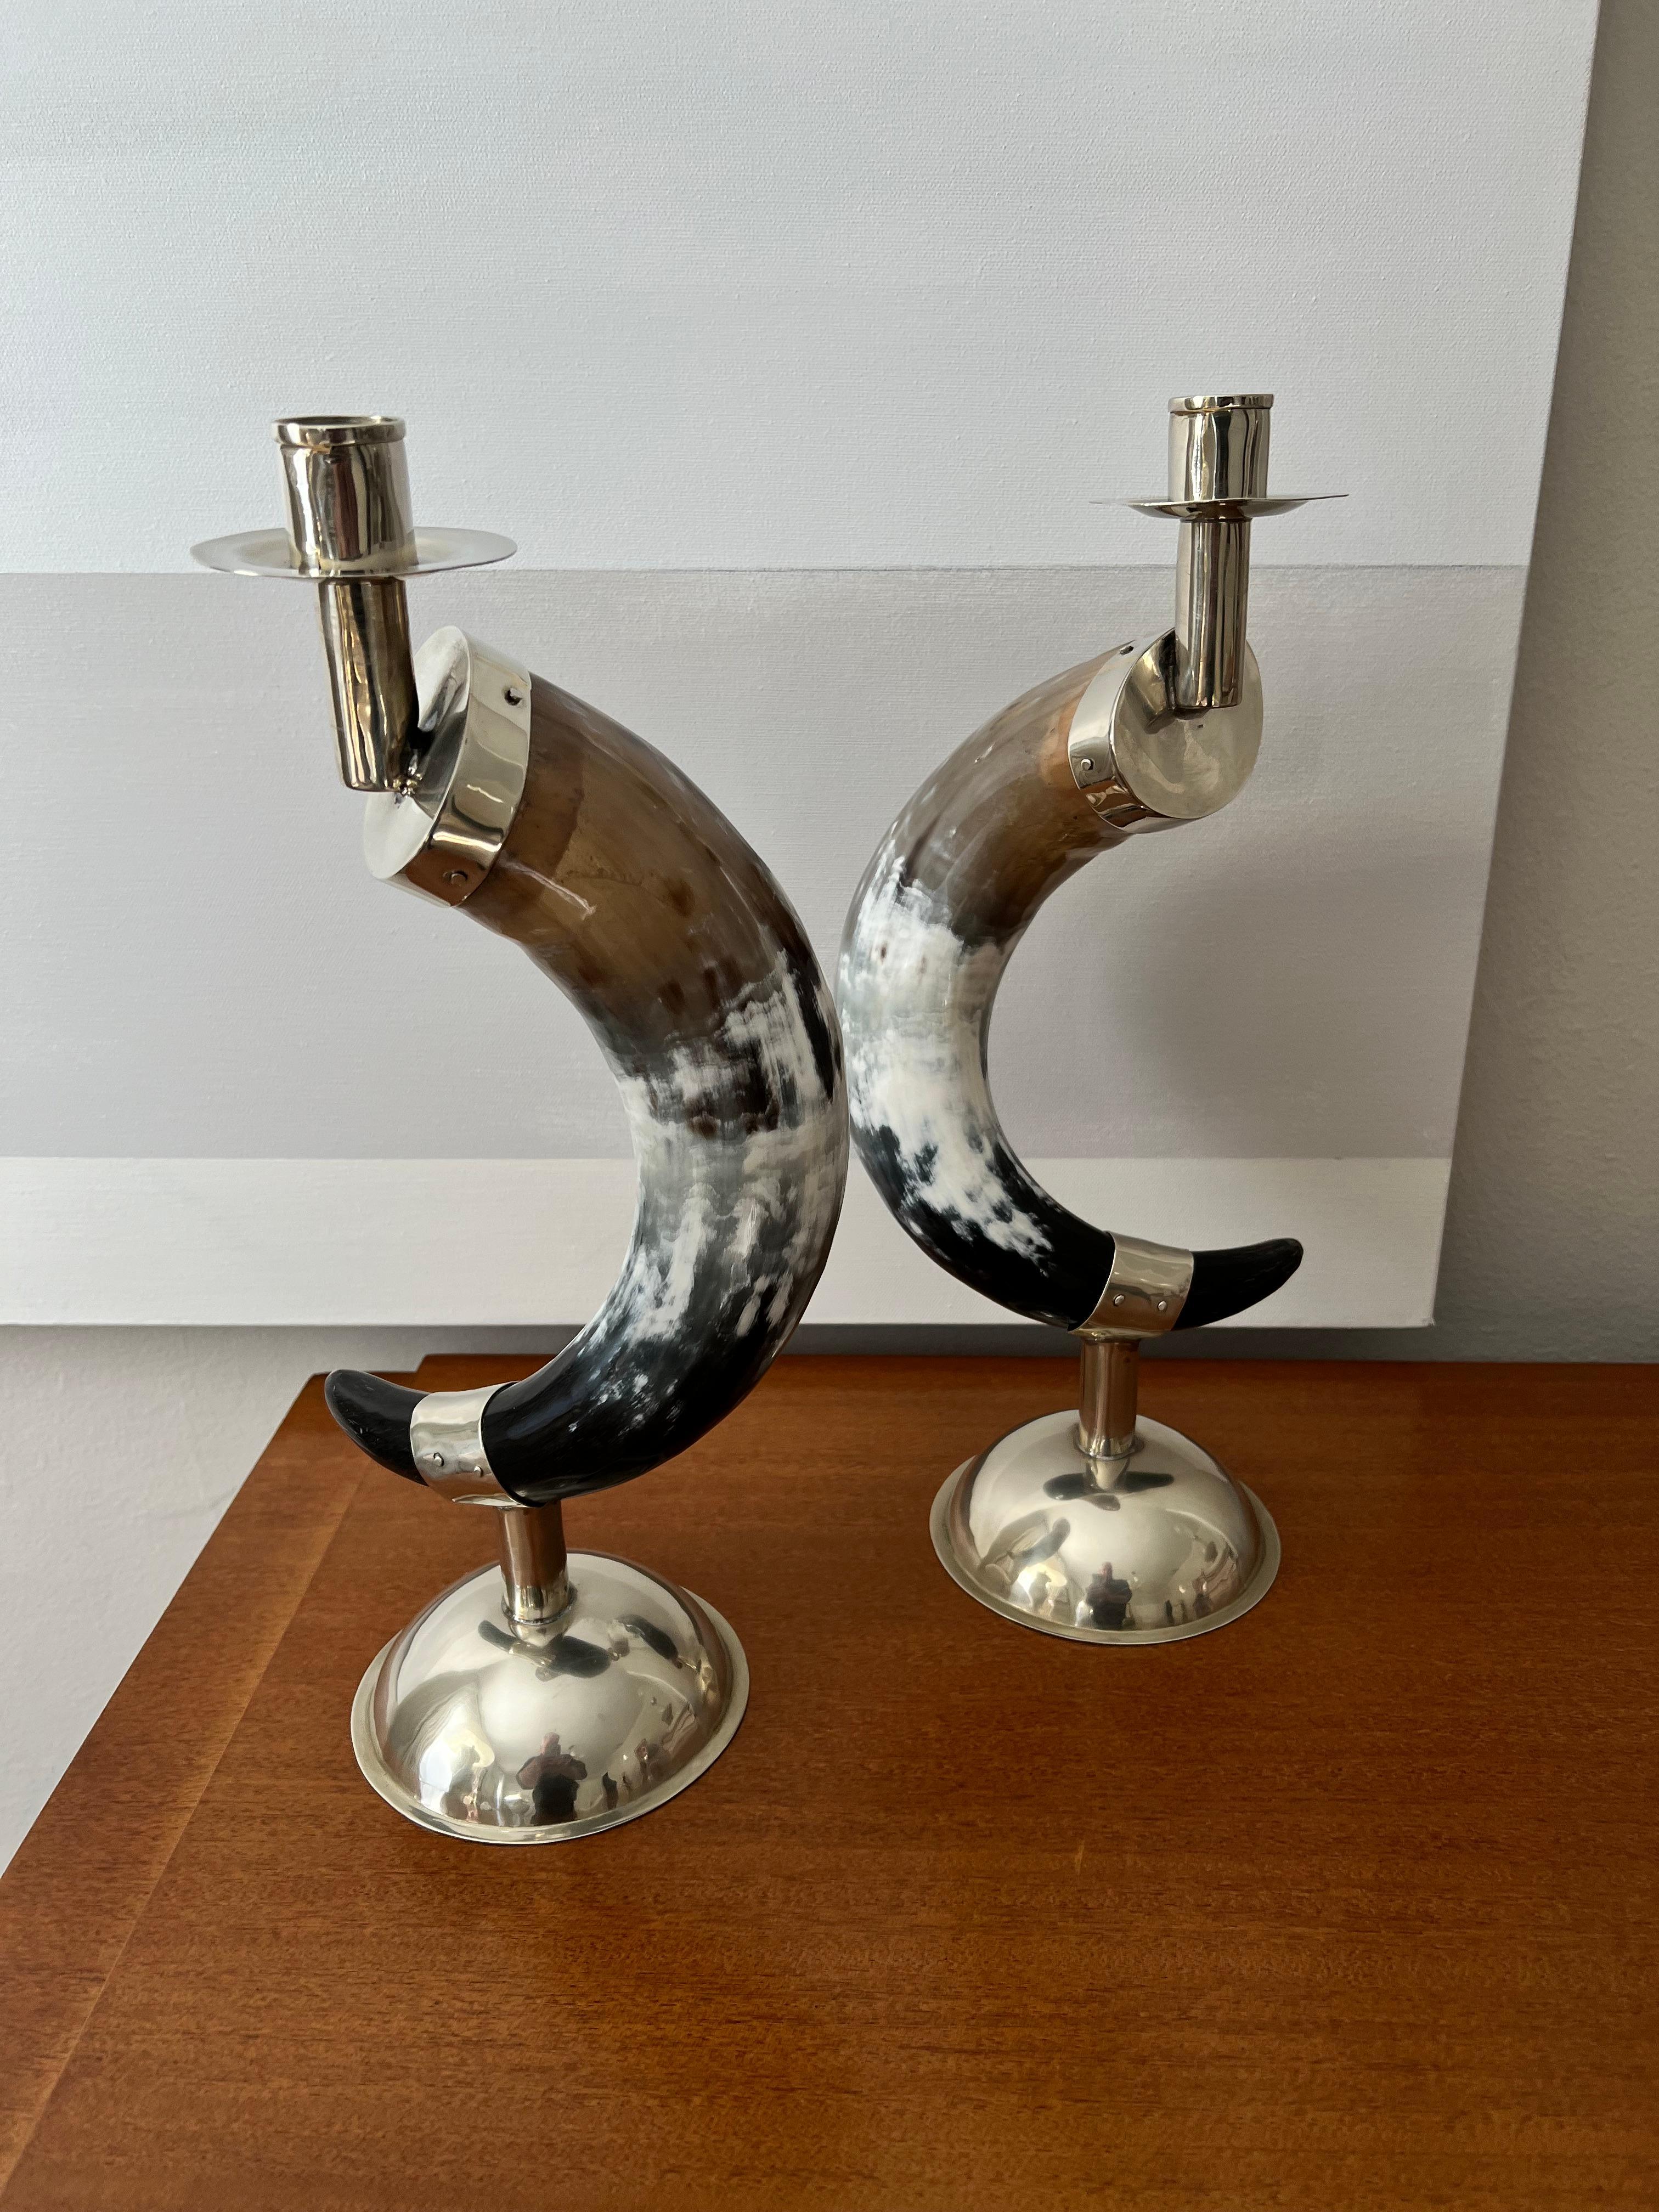 Ein Paar englische Horn-Kerzenhalter mit handgefertigtem Silberblech-Sockel und -Halter. Die beiden sind exquisit gemacht und atemberaubend. 

Ein Kompliment für viele Umgebungen und würde gut zu modernen und sauberen bis hin zu maximalen Häusern